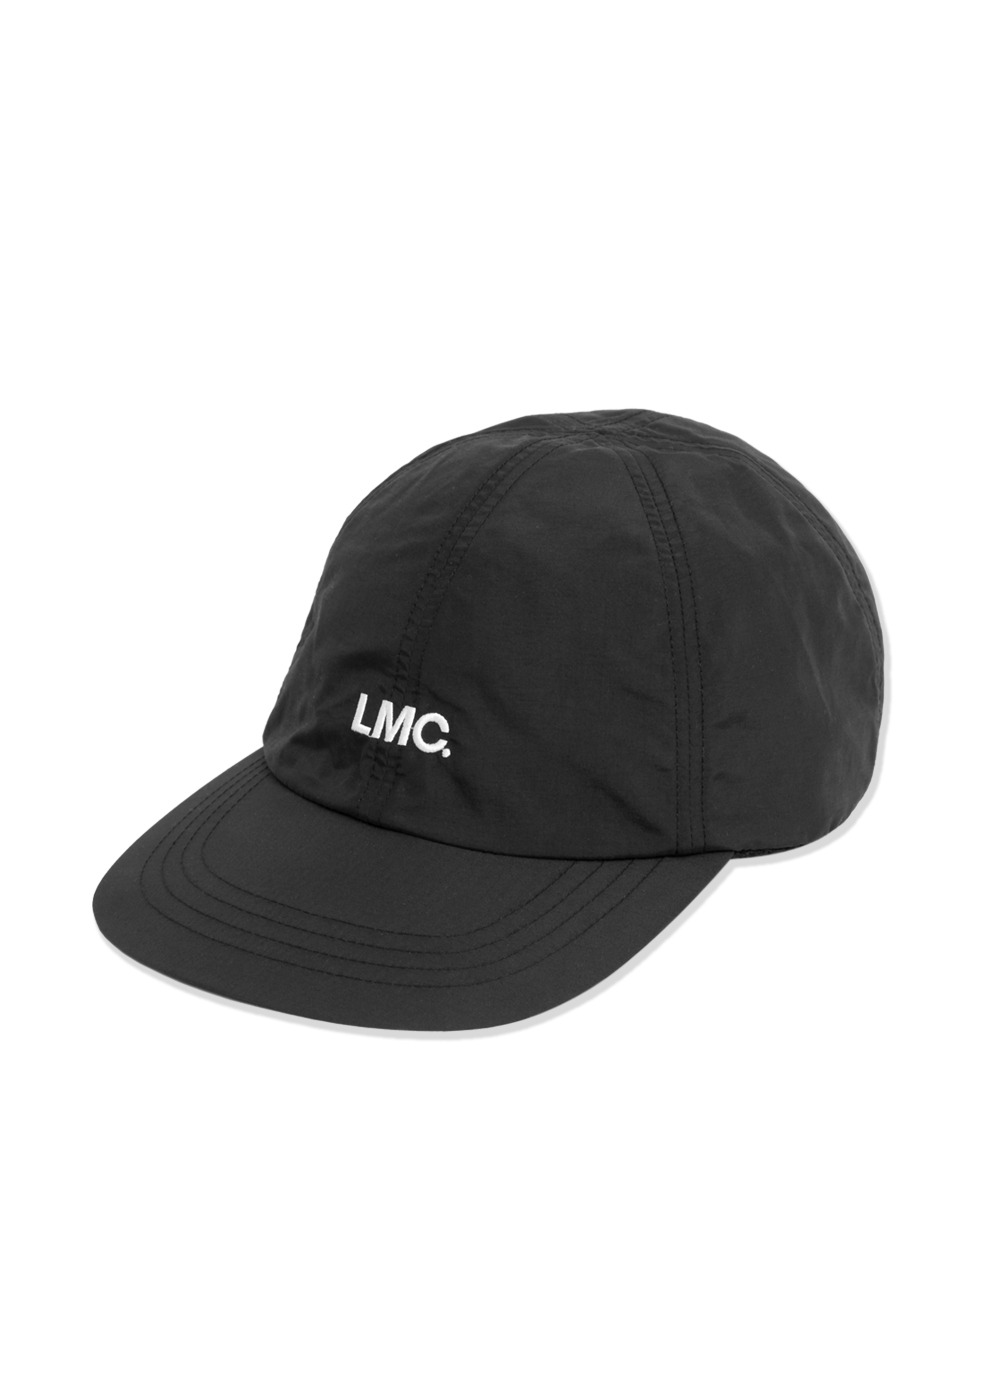 LMC NYLON OG 6 PANEL CAP black